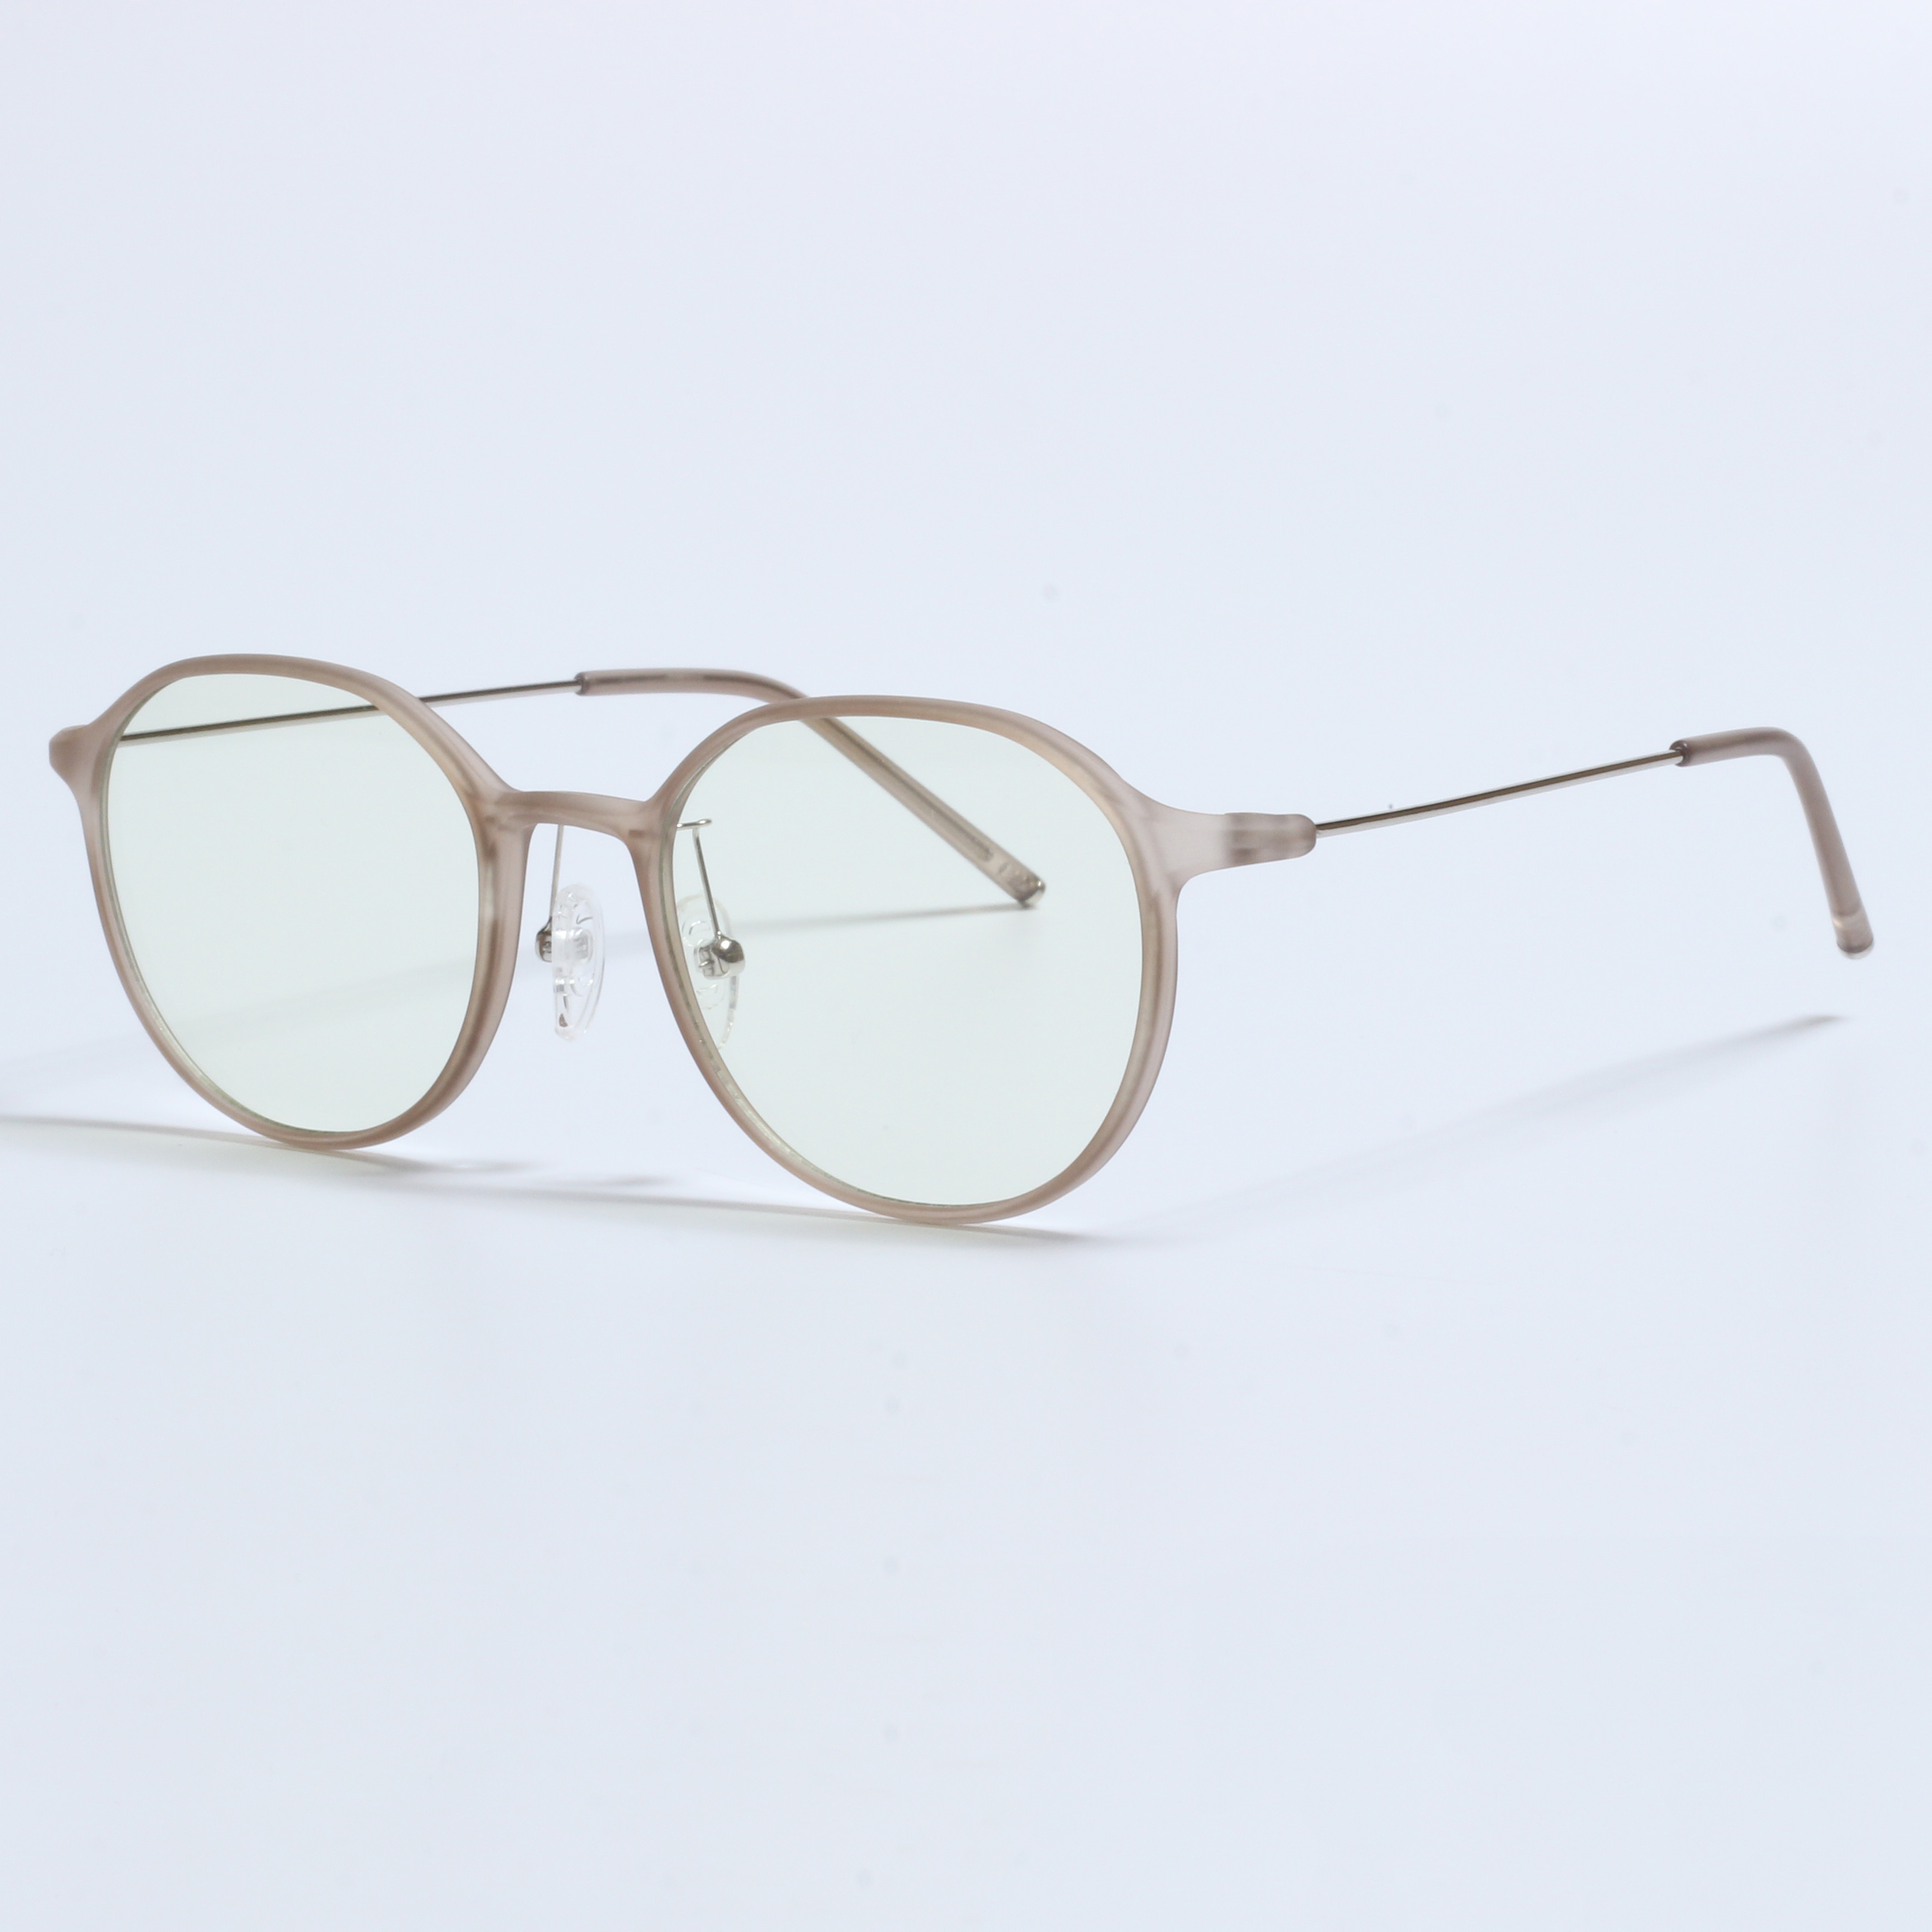 IVintage Thick Gafas Opticas De Hombres Transparent TR90 Frames (7)